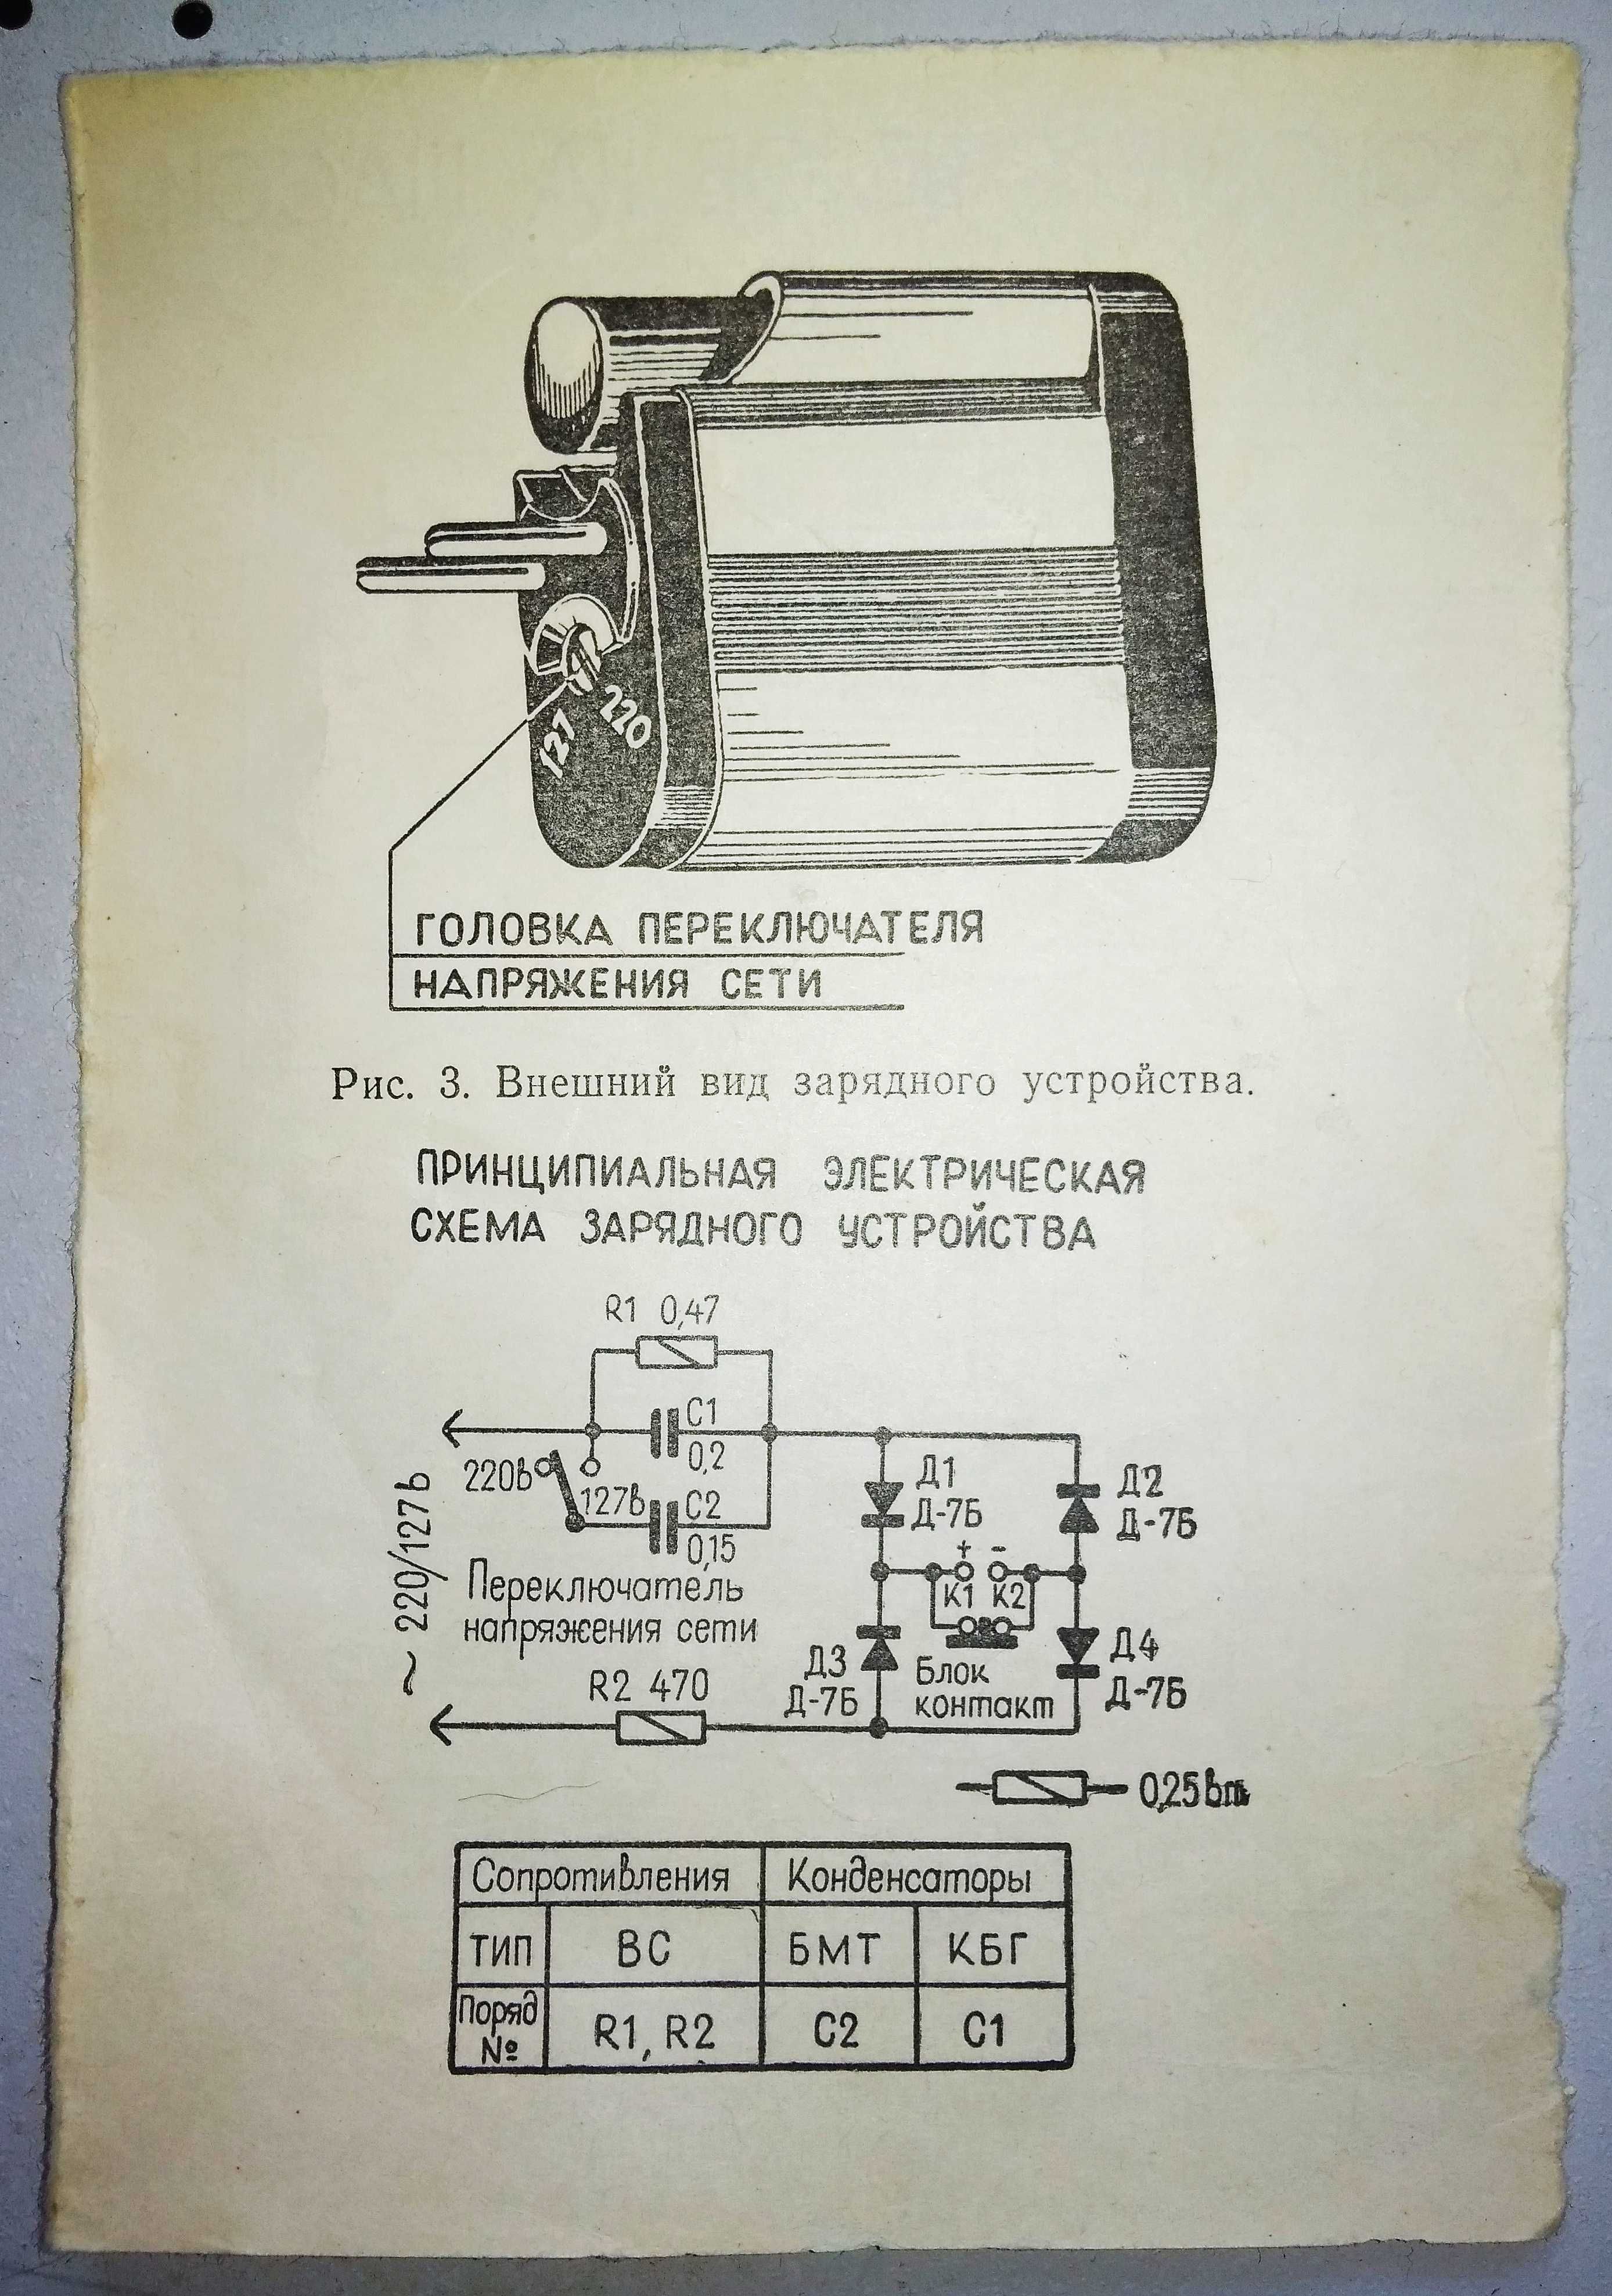 Зарядное устройство ЗУ-63 для аккумуляторов типа "Крона" СССР